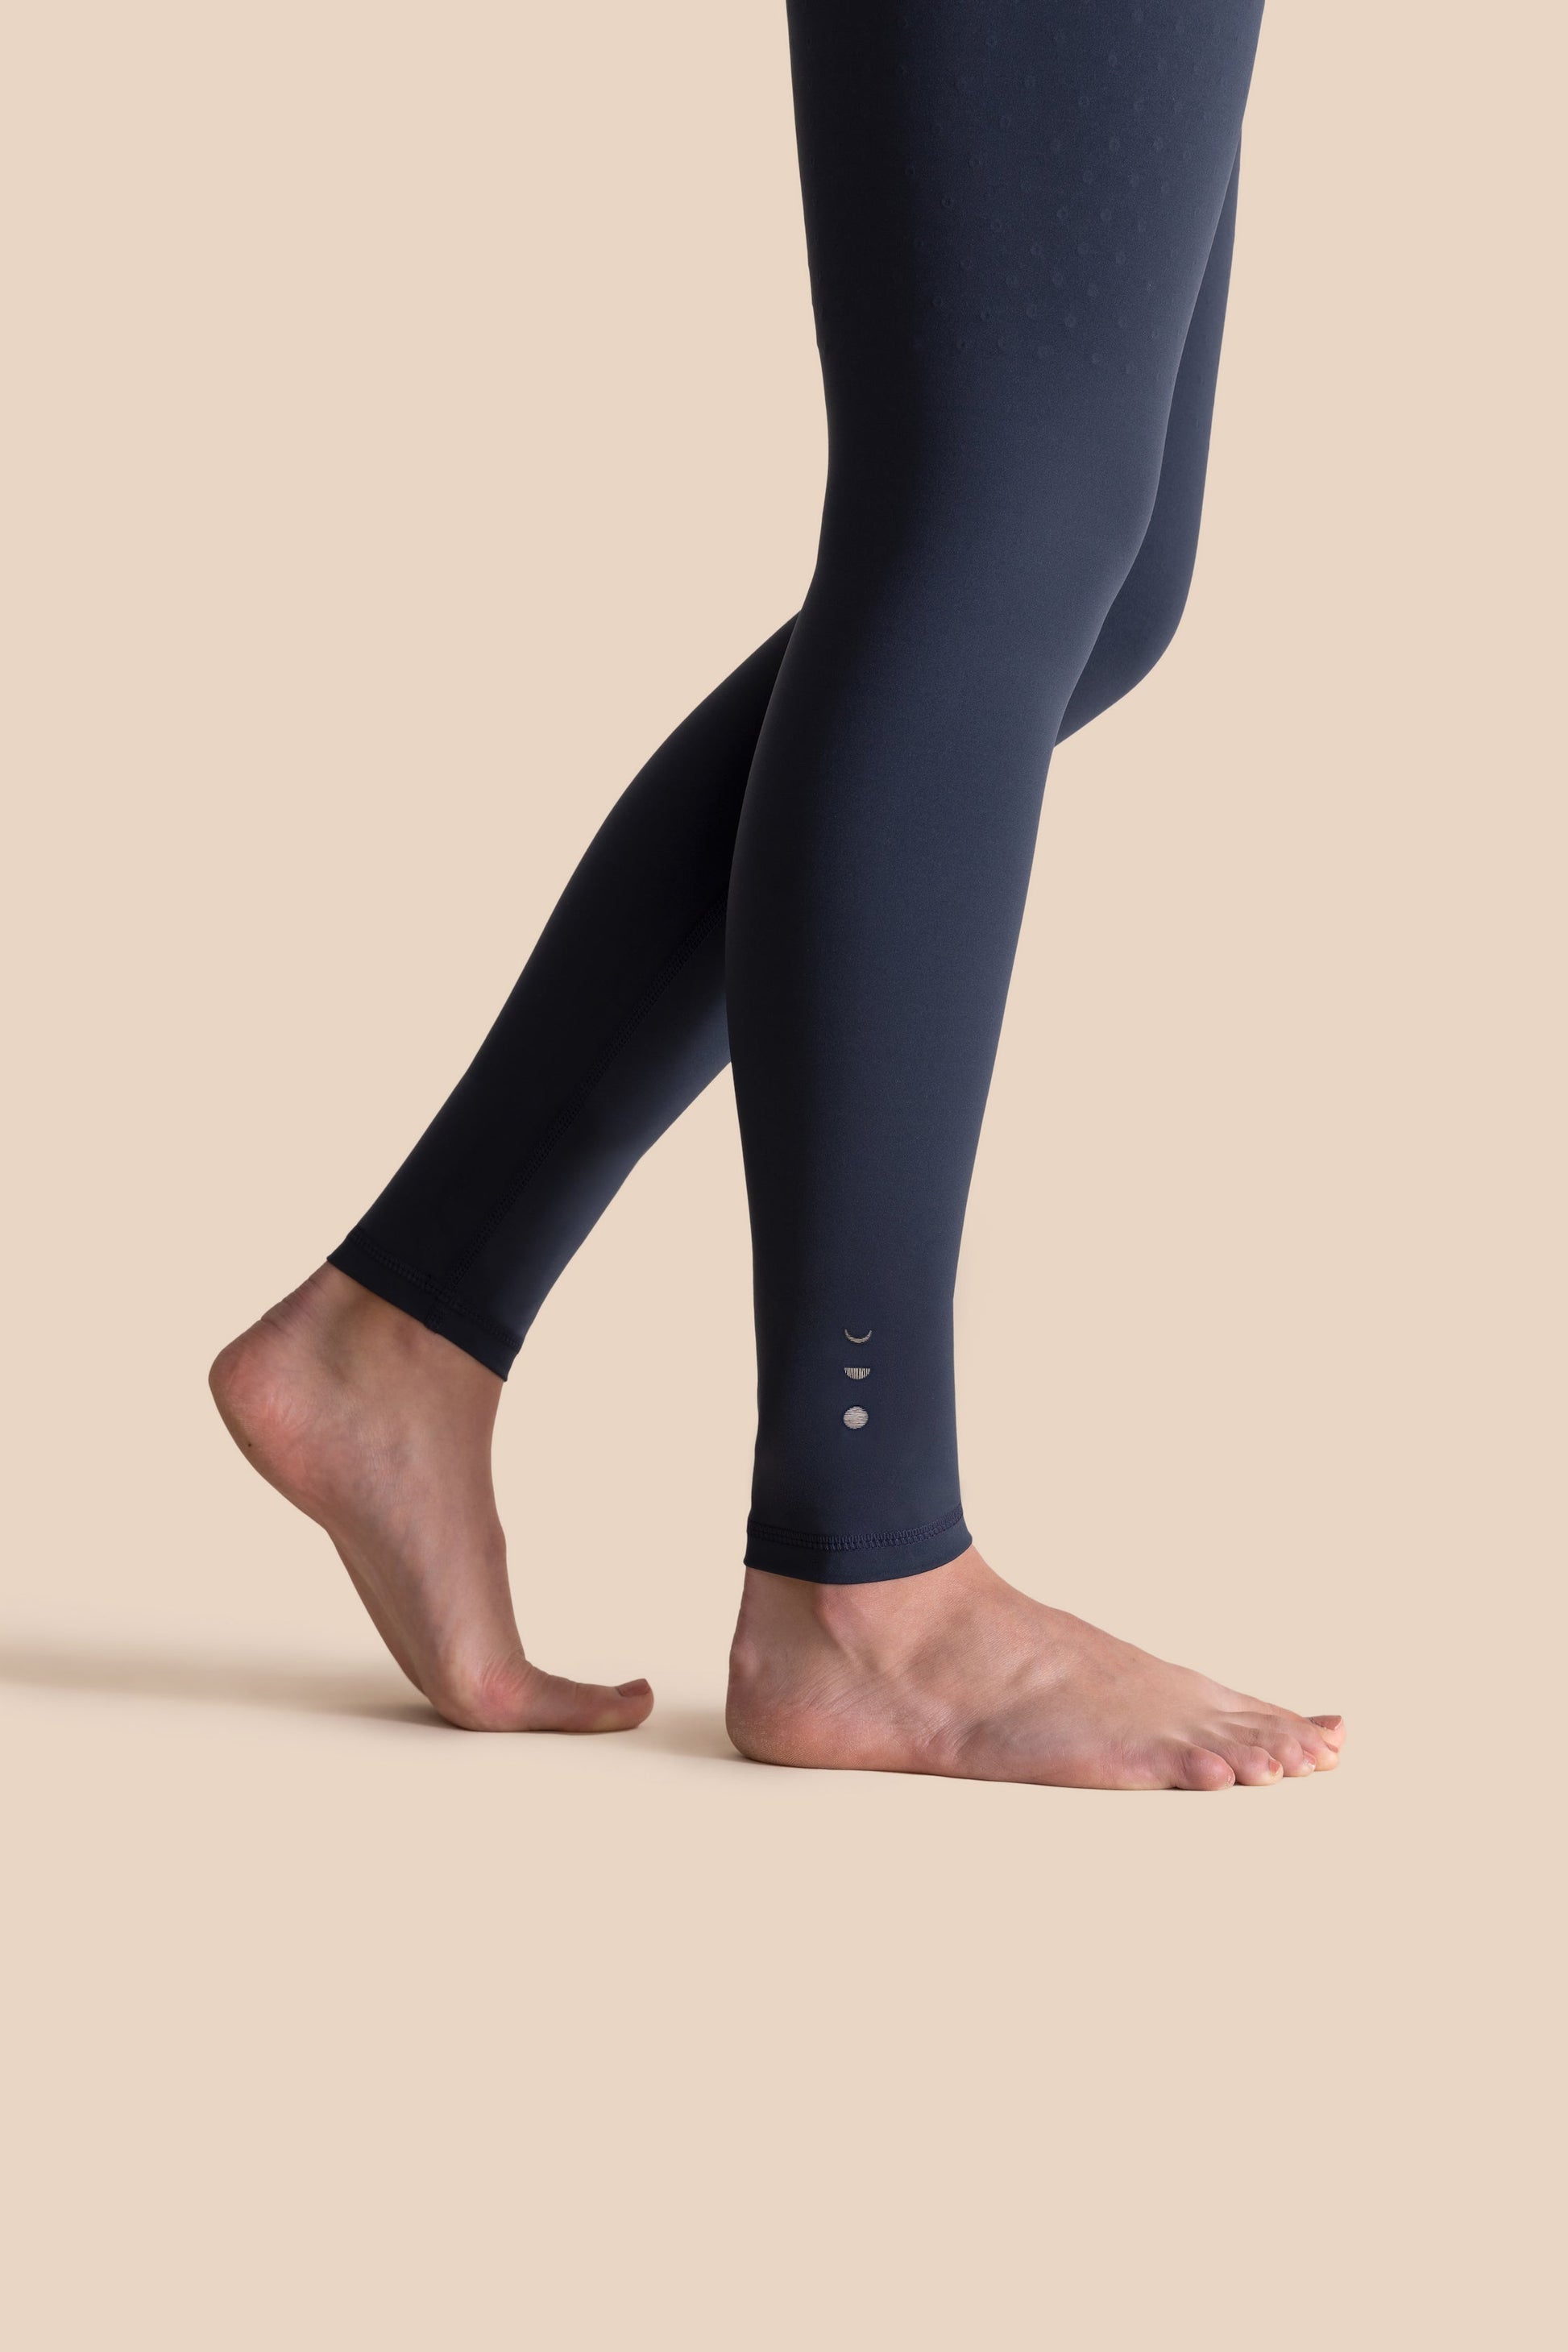 L'Original Full Legging - Elastique Athletics  Compression leggings women,  Compression leggings, Compression wear